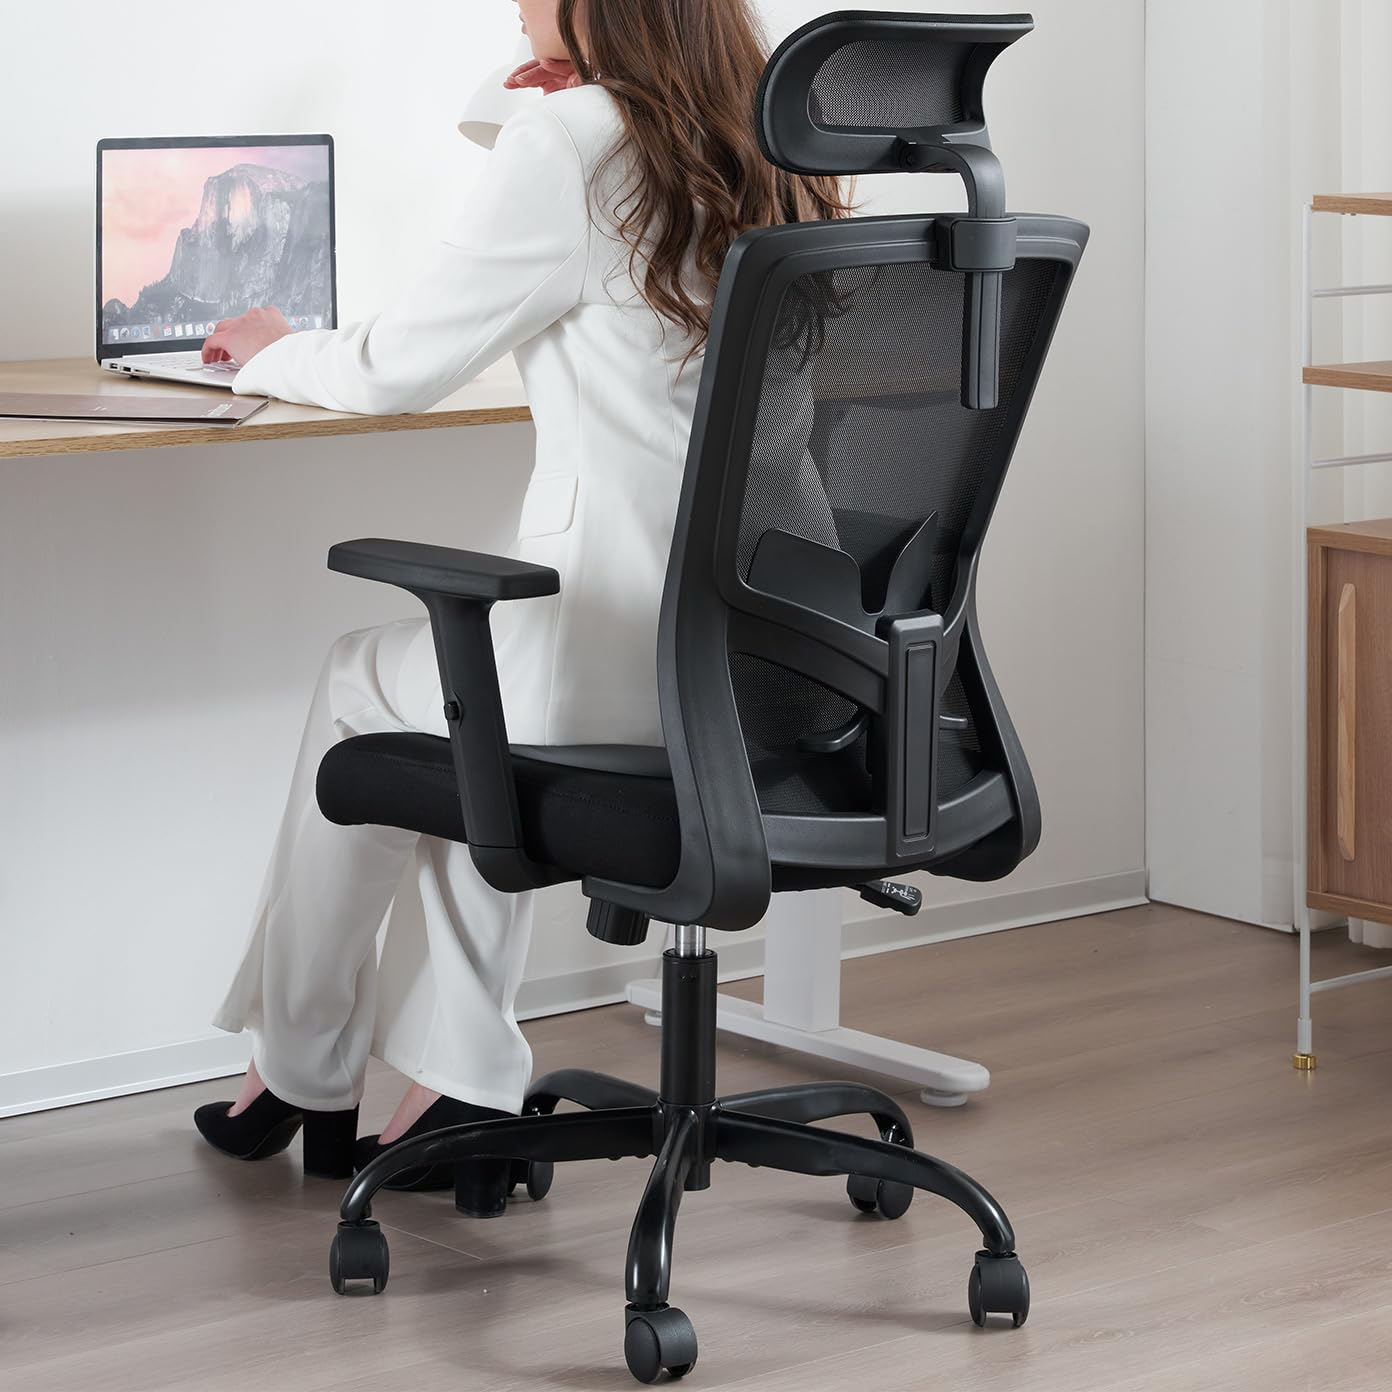 Lựa chọn ghế văn phòng cần lưu ý đến phần tựa lưng và đệm ngồi